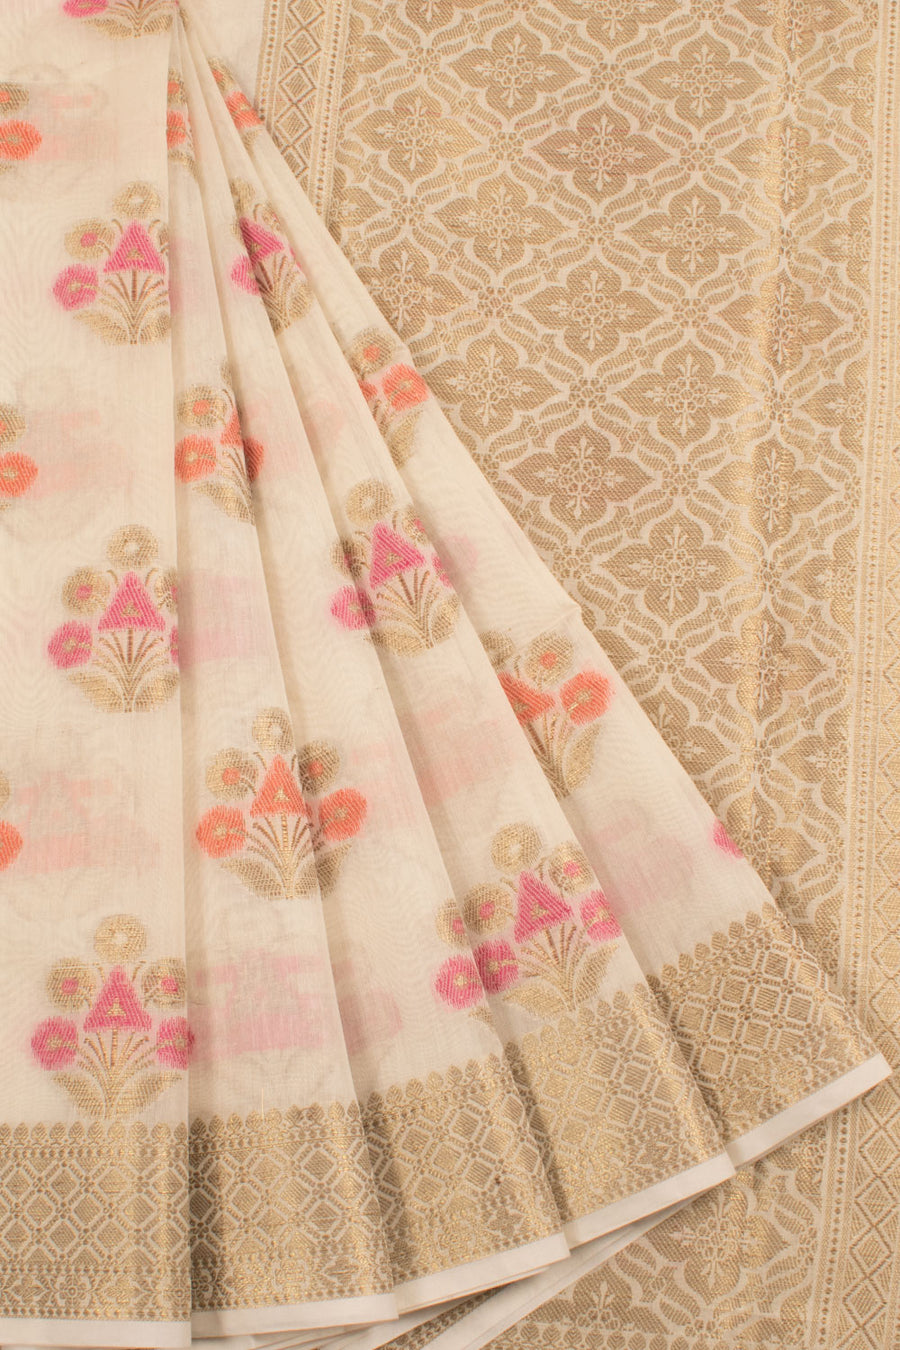 Banarasi Cotton Saree with Meenakari Floral Motifs, Diamond Border and Brocade Blouse